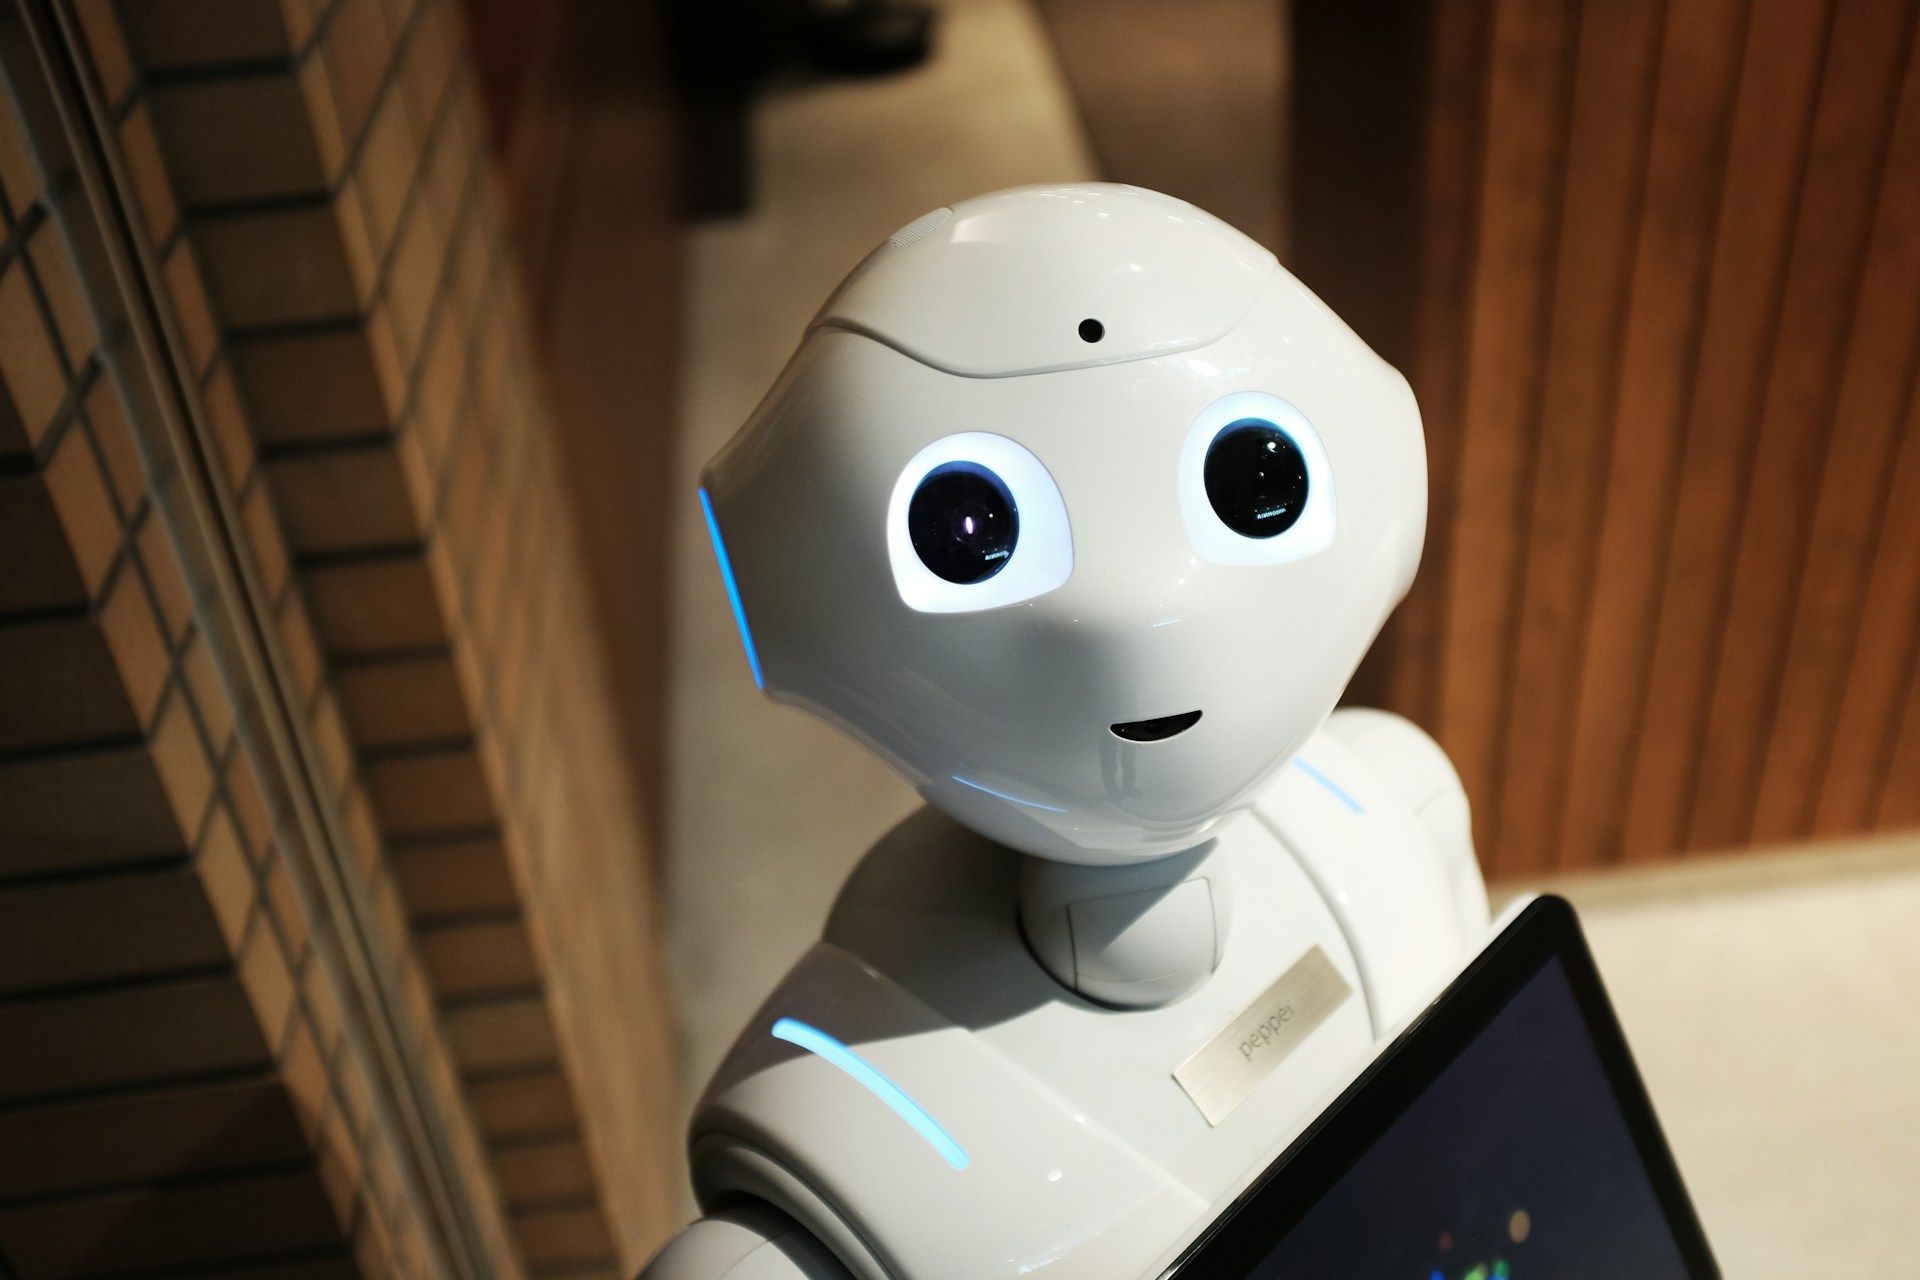 Un robot avec de grznds yeux sympathiques - Photo de Alex Knight sur https://unsplash.com/fr/photos/robot-blanc-pres-dun-mur-brun-2EJCSULRwC8